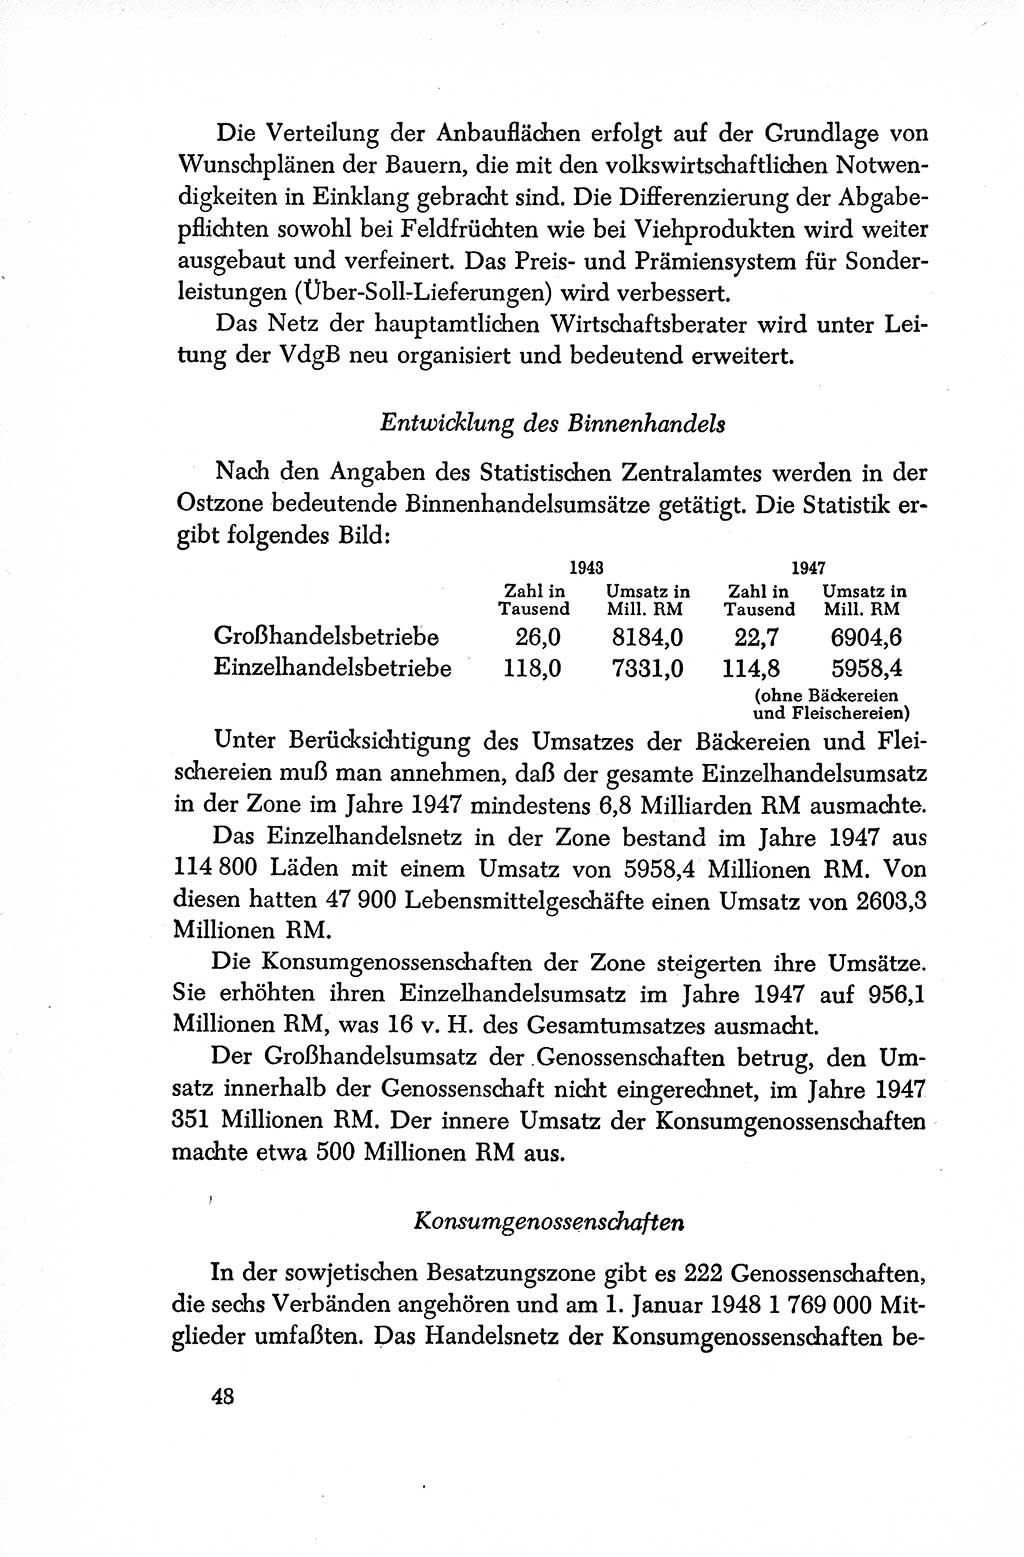 Dokumente der Sozialistischen Einheitspartei Deutschlands (SED) [Sowjetische Besatzungszone (SBZ) Deutschlands/Deutsche Demokratische Republik (DDR)] 1948-1950, Seite 48 (Dok. SED SBZ Dtl. DDR 1948-1950, S. 48)